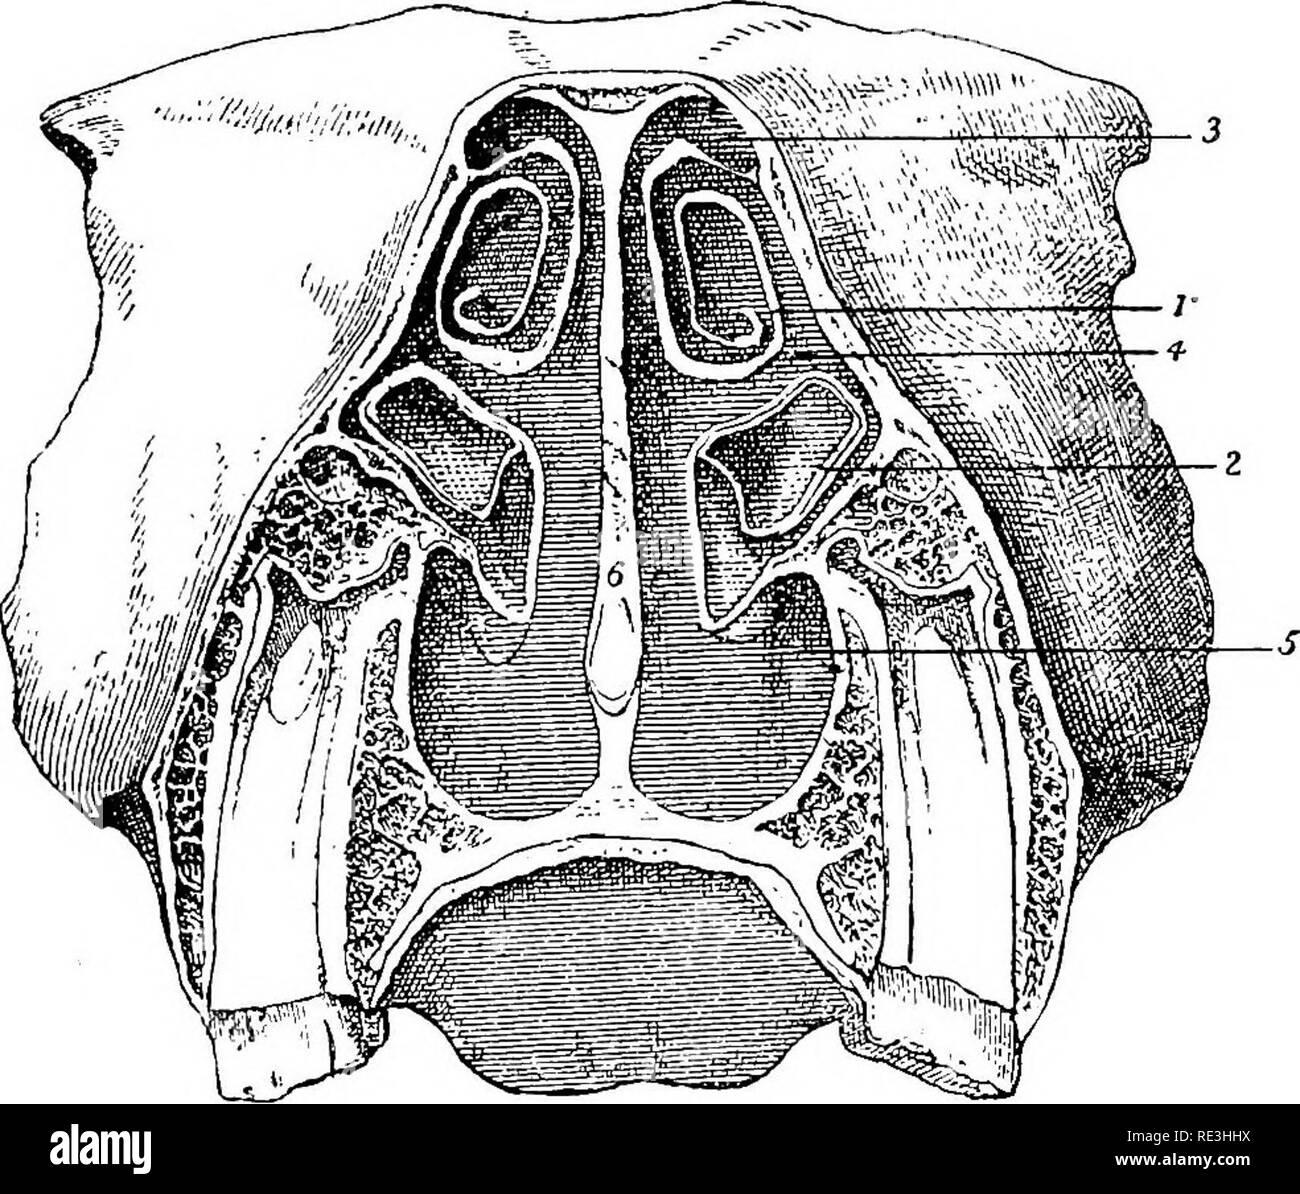 . L'anatomia del cavallo, una dissezione guida. I cavalli. 224 L'anatomia dell'HOBSB. Ma per la maggior parte della sua estensione della partizione è composto da una piastra di cartilagine la cartilagine settale. Questa cartilagine settale è continuo al di sopra con la perpendicolare della piastra che è semplicemente un ossificata porzione di esso; dietro di esso è ricevuto nella fessura del vomer e si espande sulla sutura premaxillary ; di fronte si espande sull'aspetto interno della sutura internasal; e inferiormente le cartilagini alari sono mobilmente costitui- legato ad esso. L'estremità inferiore del fossee nasale viene denominata infe Foto Stock